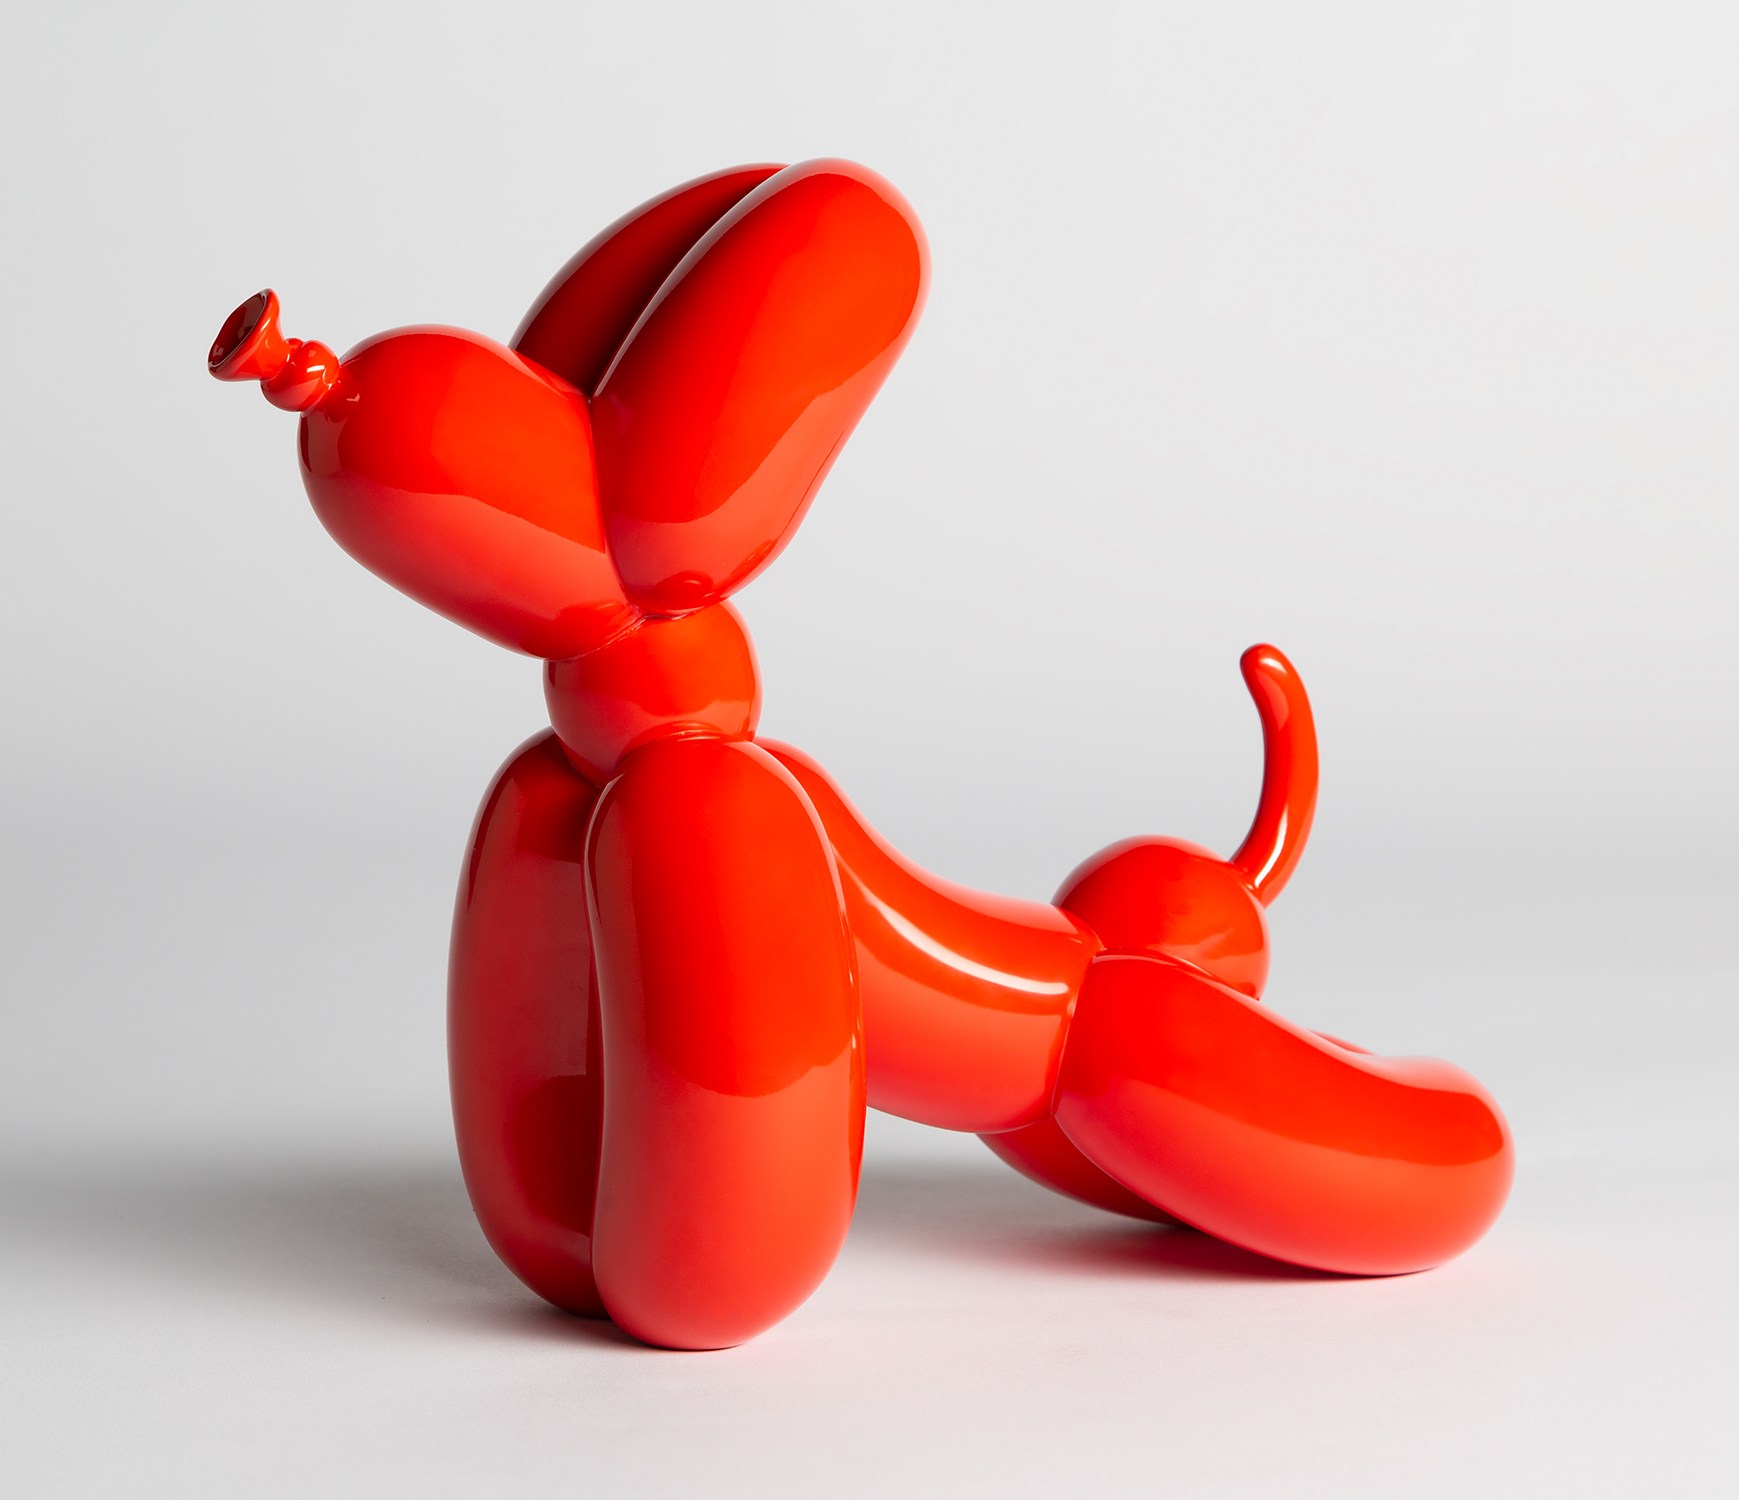 Downward Balloon Dog, Red, Whatshisname